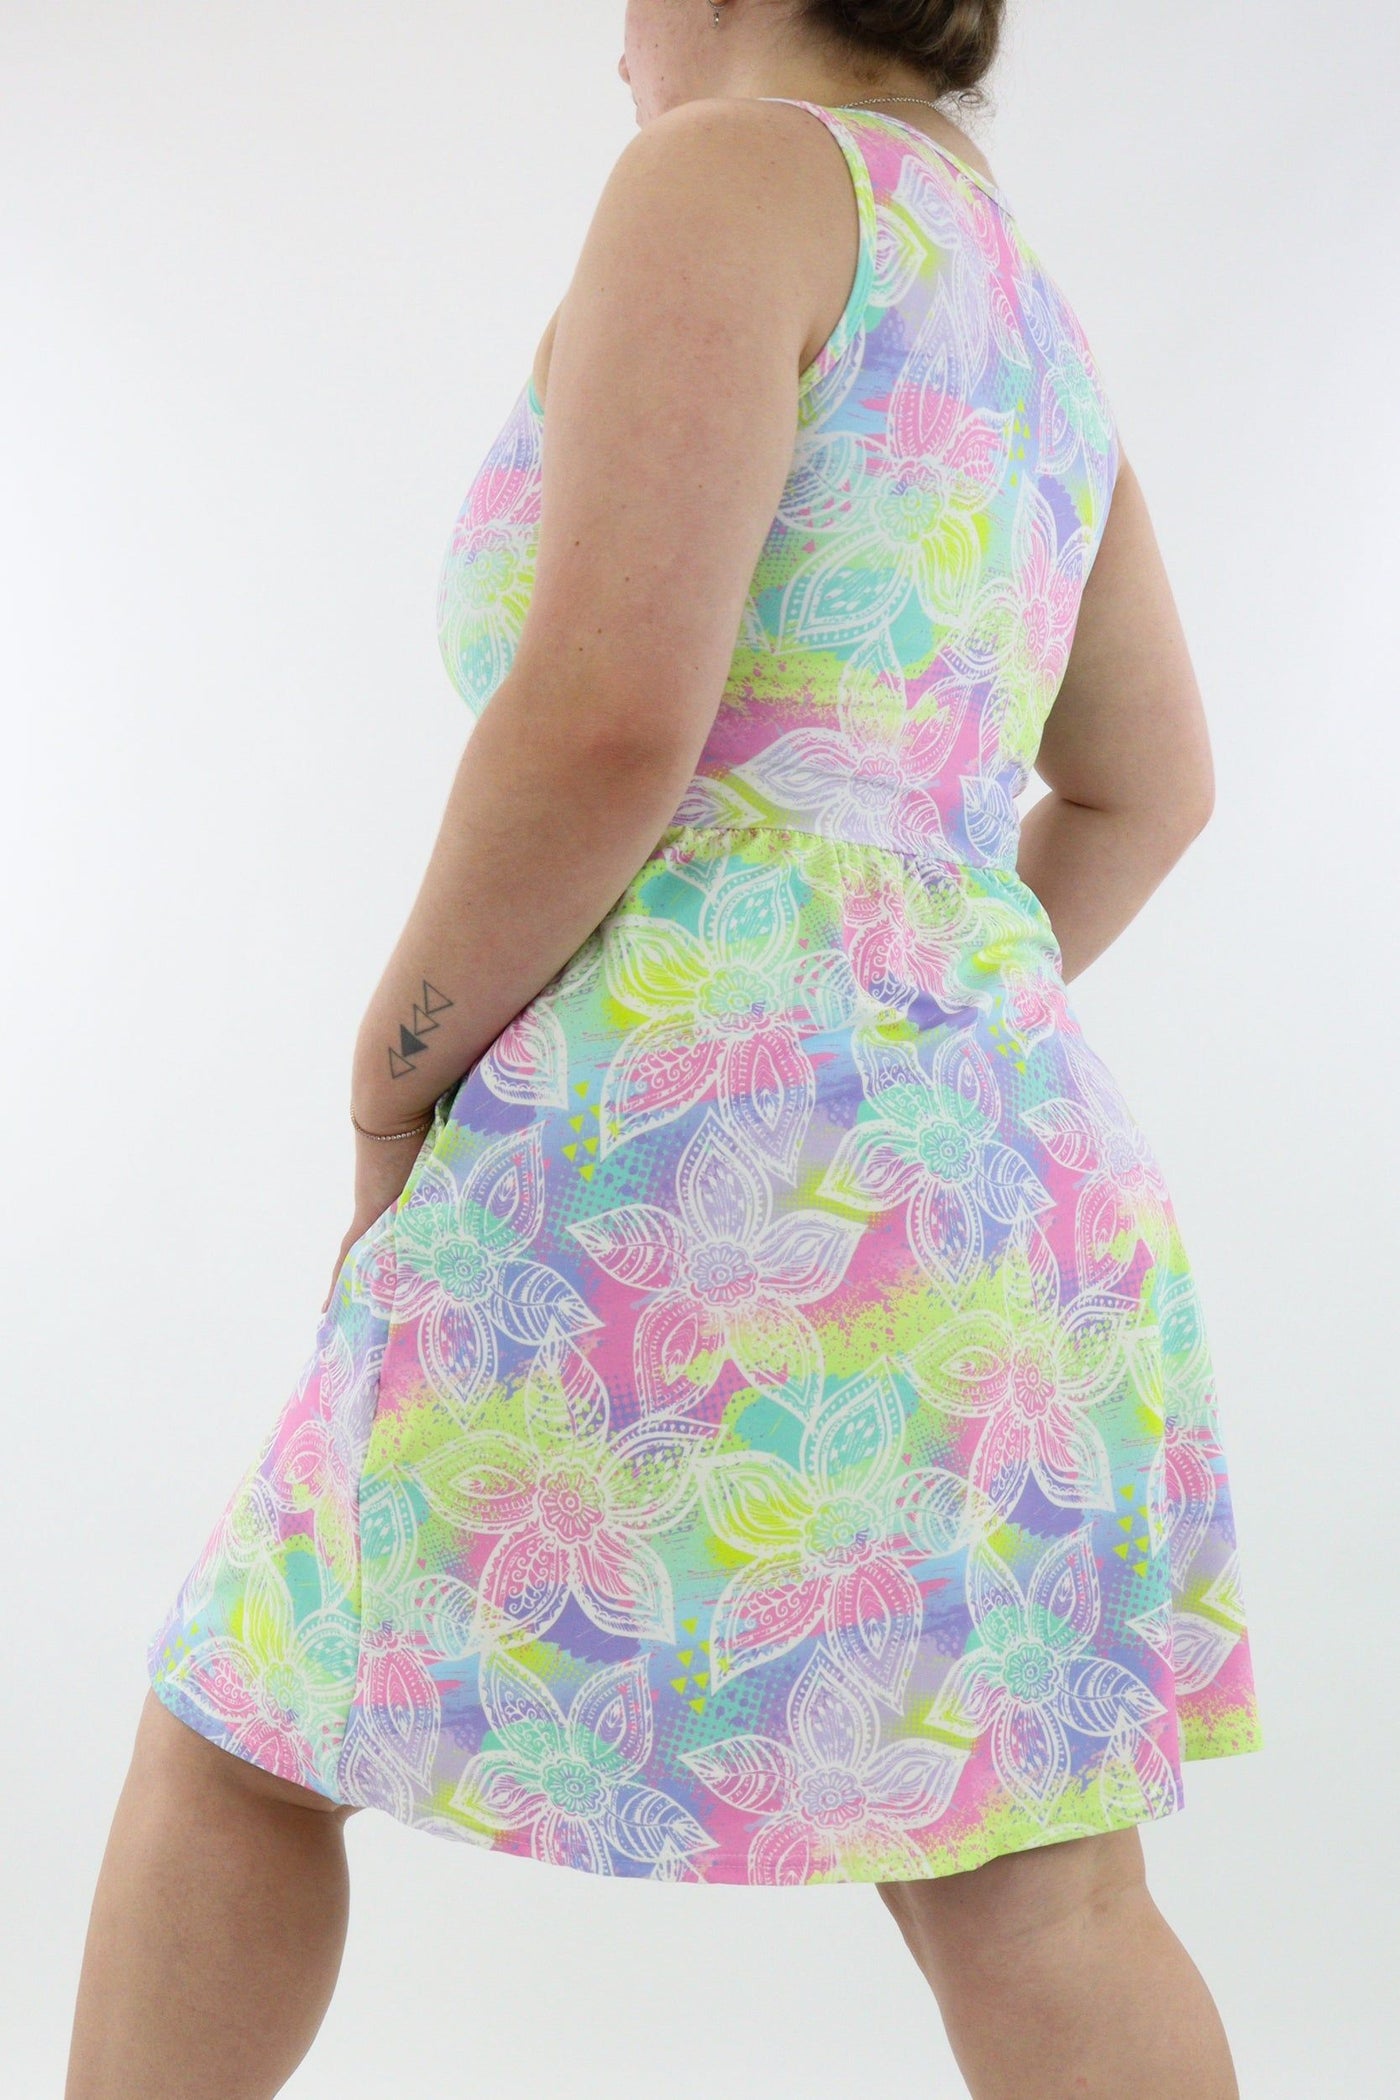 Freedom Flower - Sleeveless Skater Dress - Knee Length - Side Pockets - Pawlie